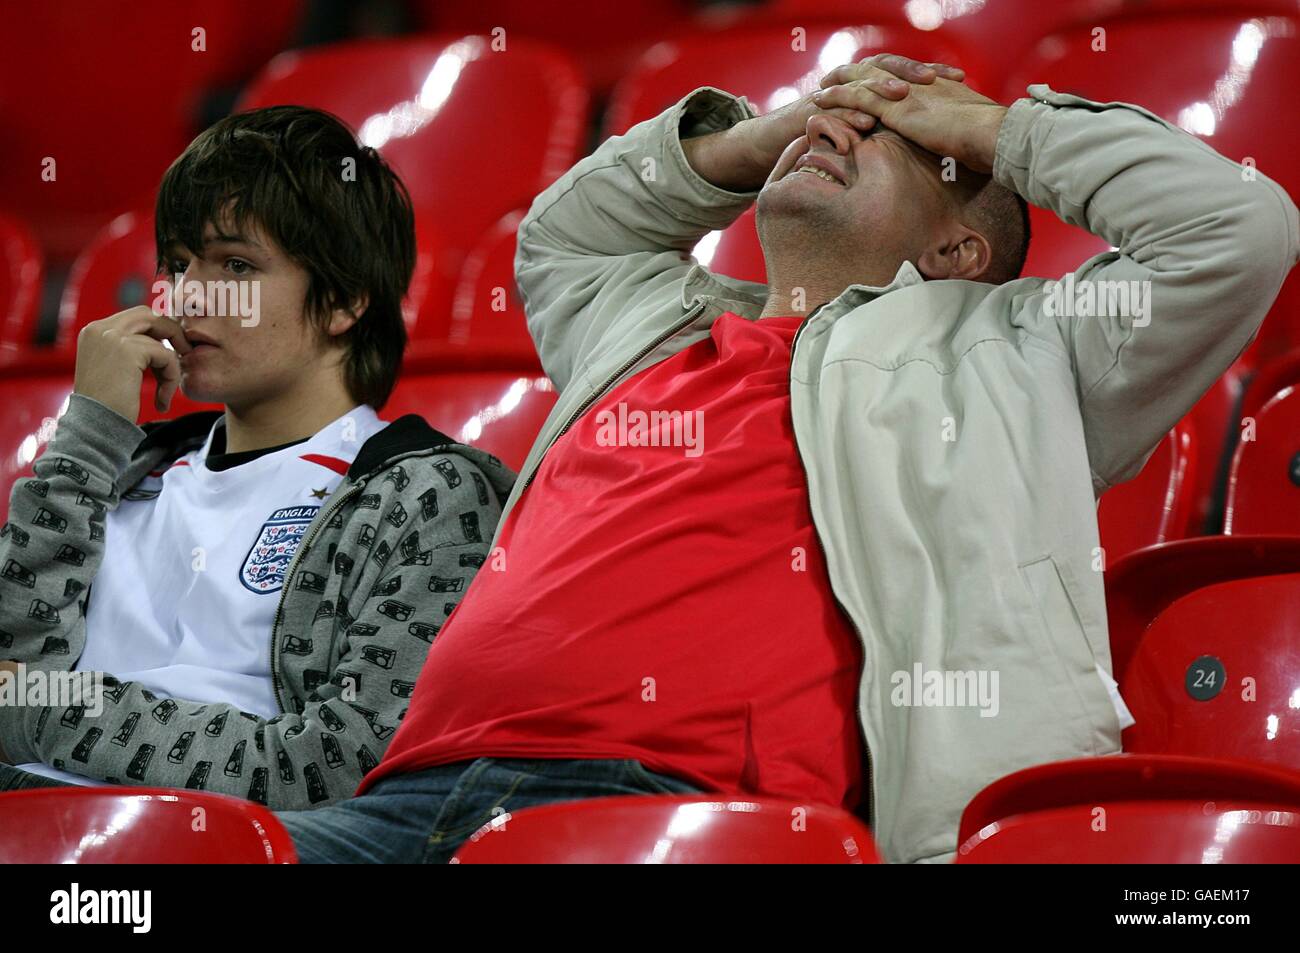 Fußball - UEFA-Europameisterschaft 2008 Qualifikation - Gruppe E - England gegen Kroatien - Wembley-Stadion. England-Fans sitzen niedergeschlagen, nachdem ihre Mannschaft sich nicht für die UEFA-Europameisterschaft qualifiziert hat Stockfoto